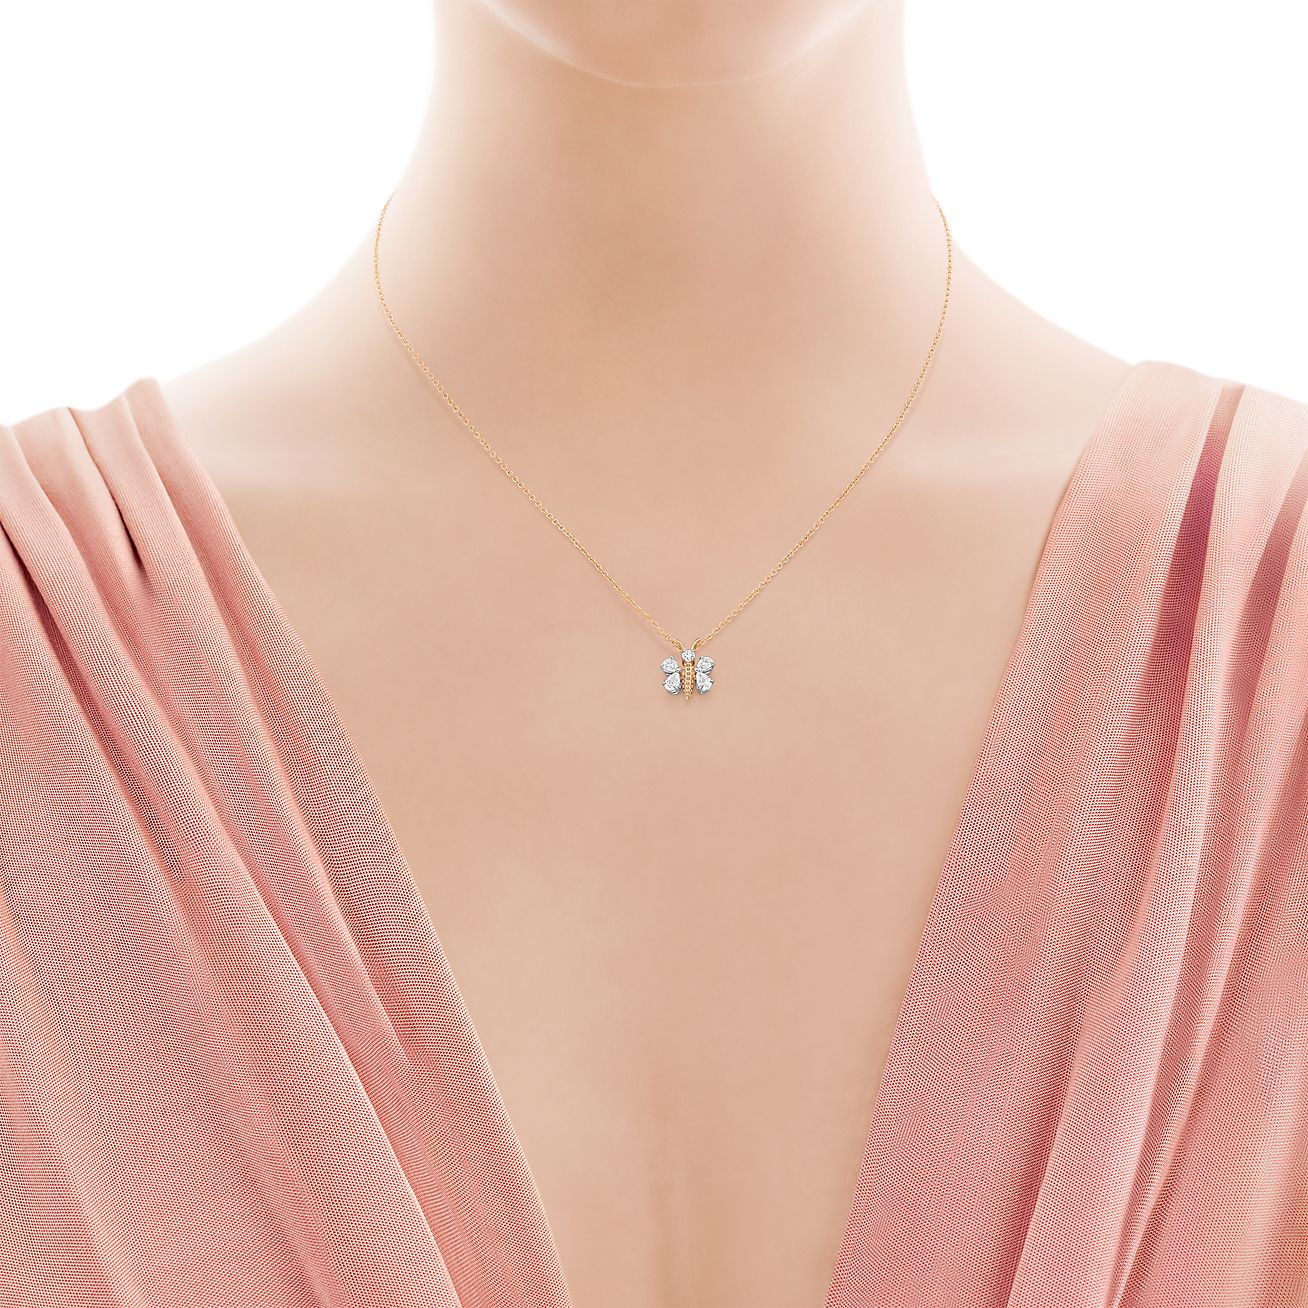 tiffany & co diamond necklace